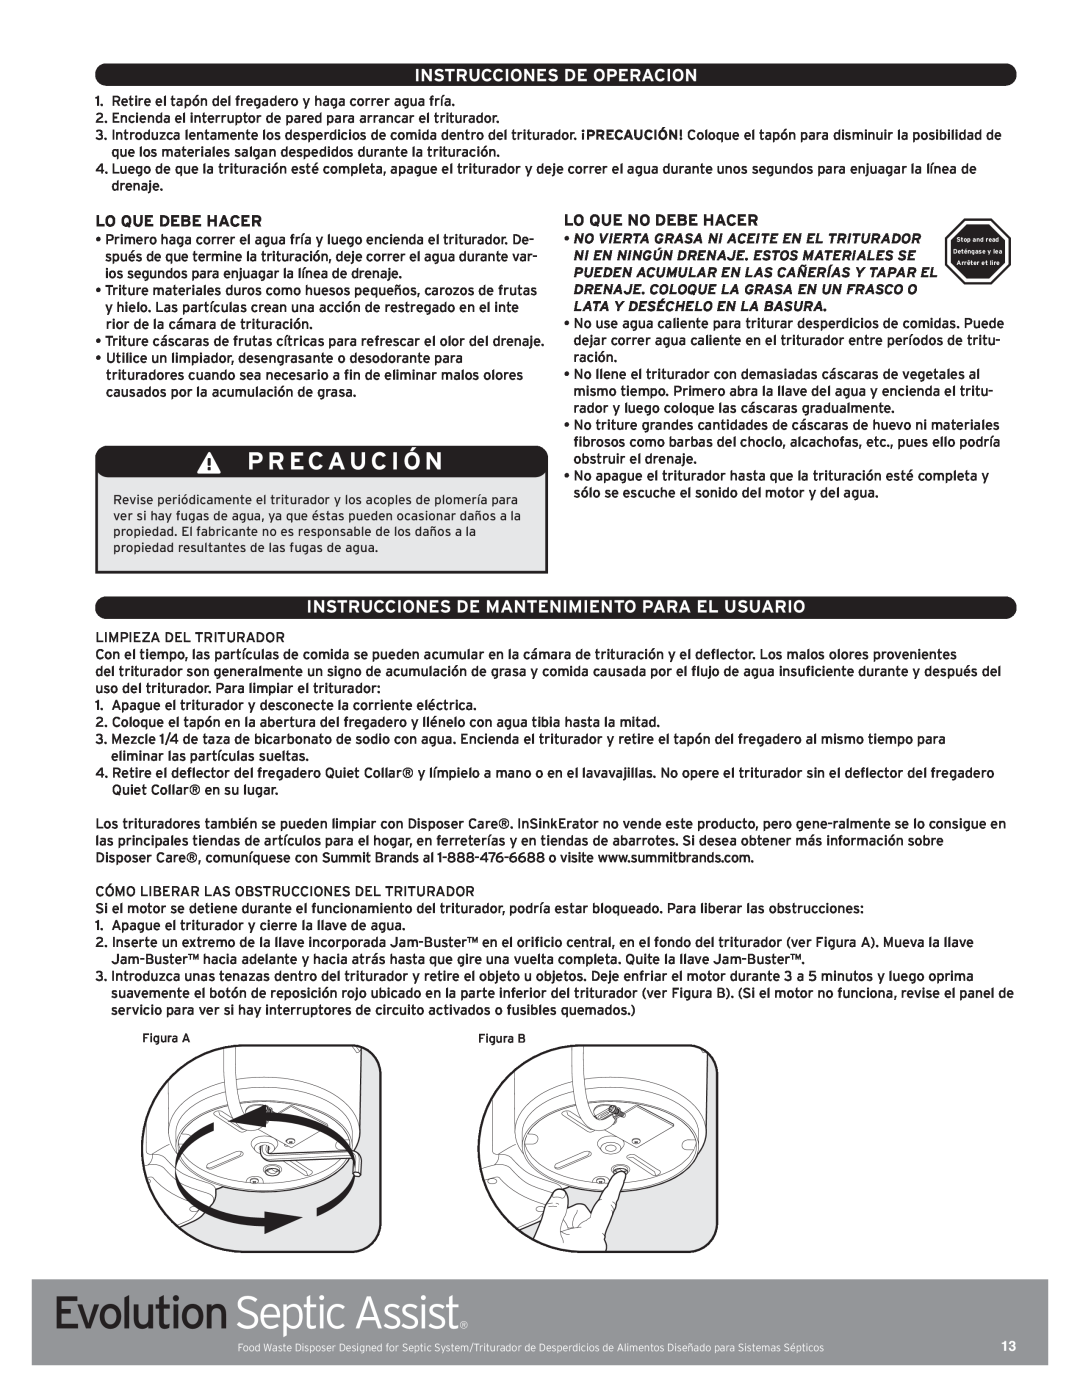 InSinkErator 76137 manual Pr Ecauci Ó N, Instrucciones De Operacion, Instrucciones De Mantenimiento Para El Usuario 